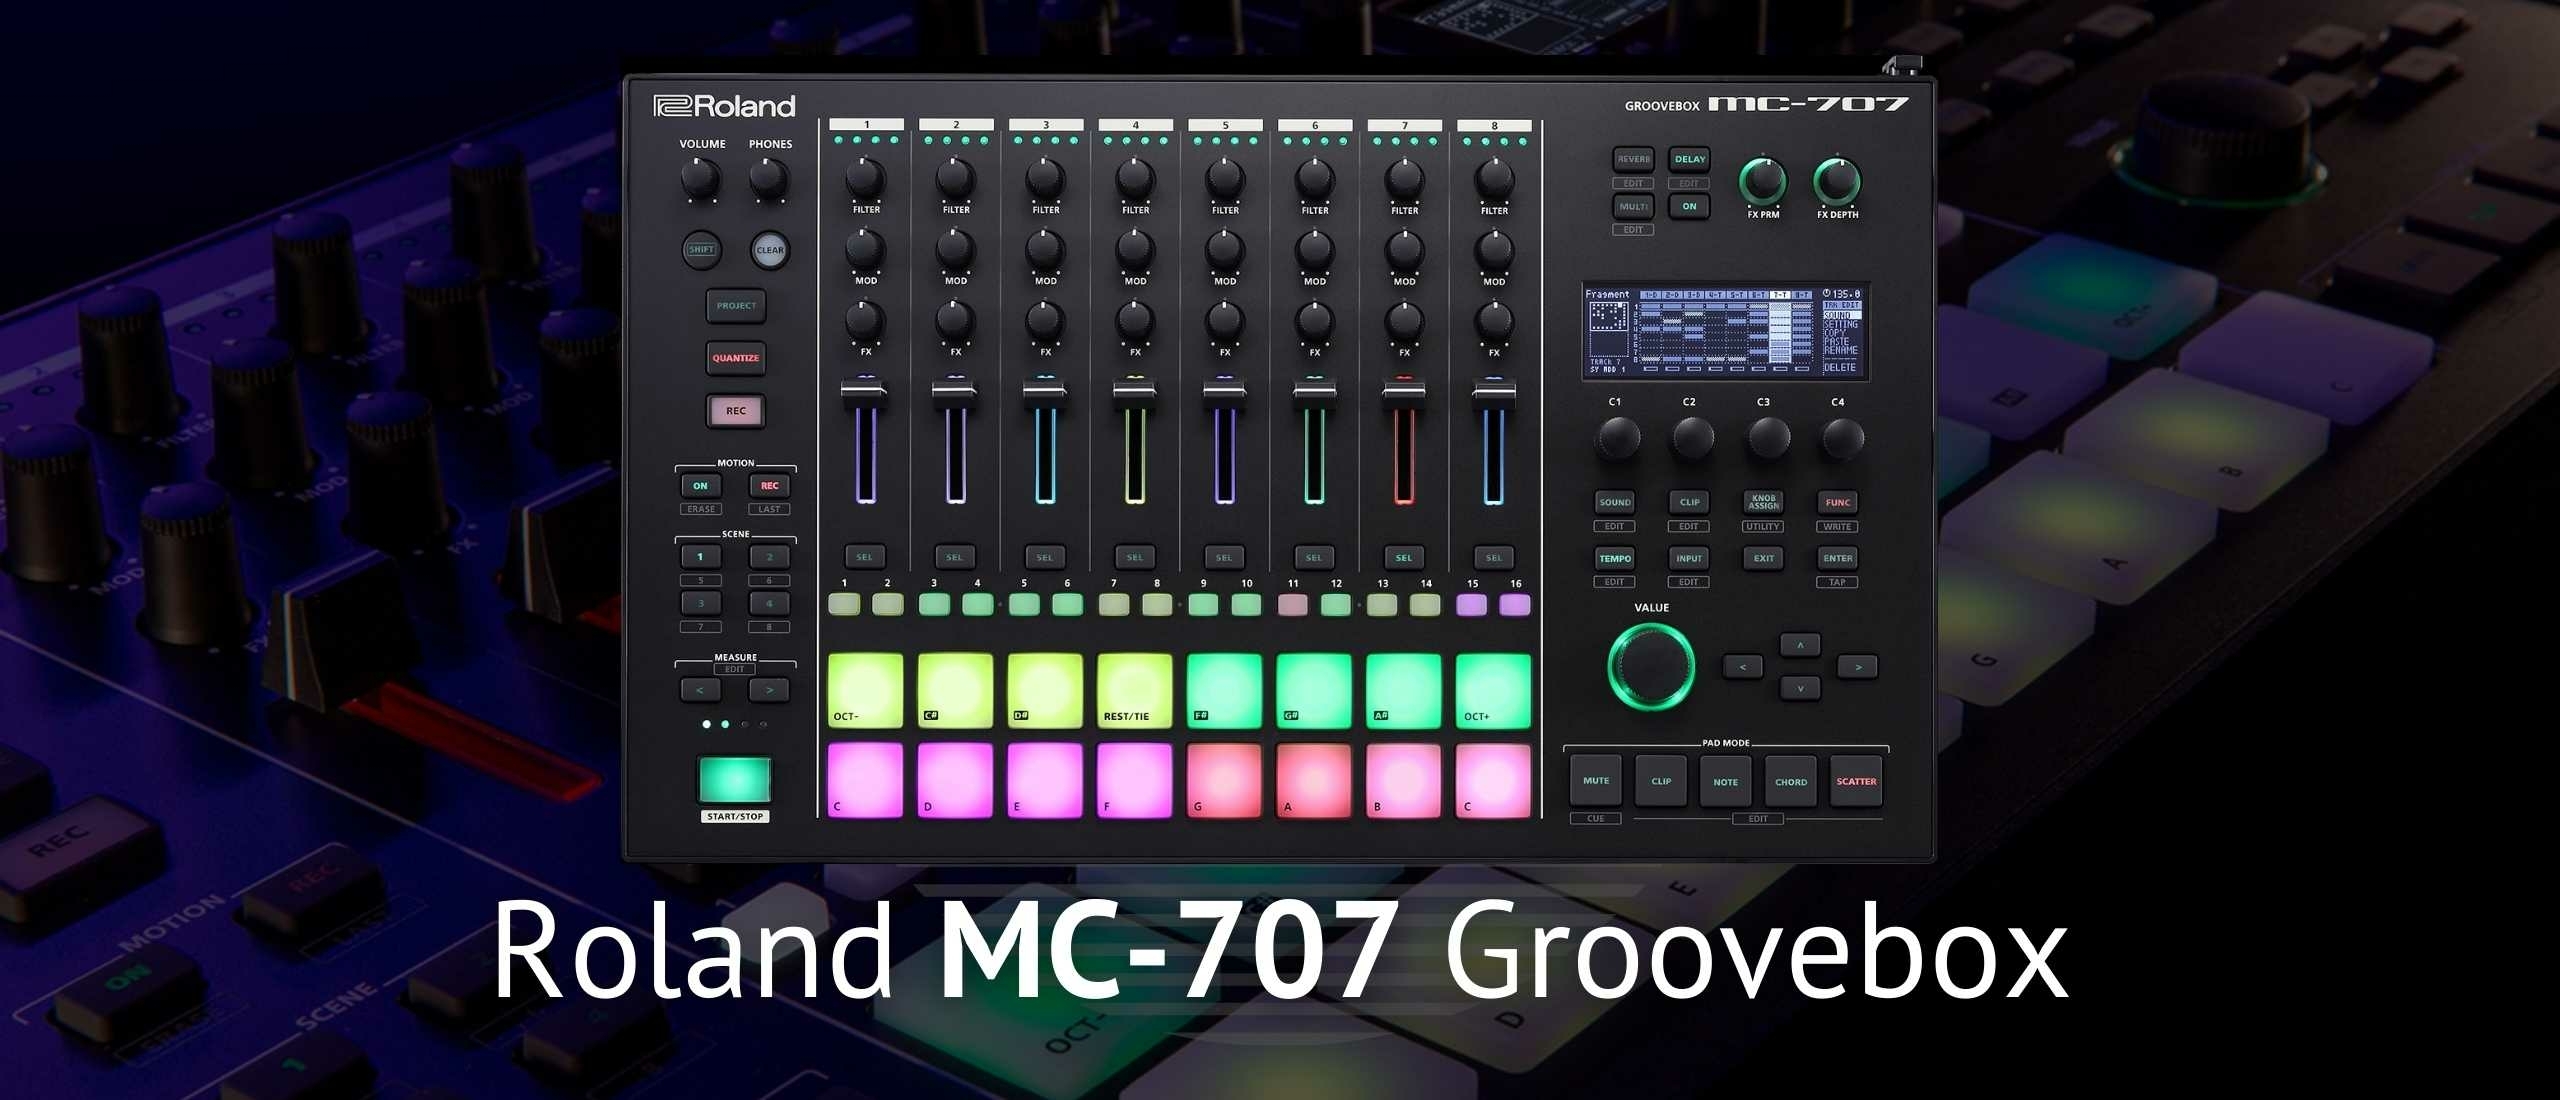 Roland MC-707 Groovebox: Hoe Ver Gaat Jouw Creativiteit?